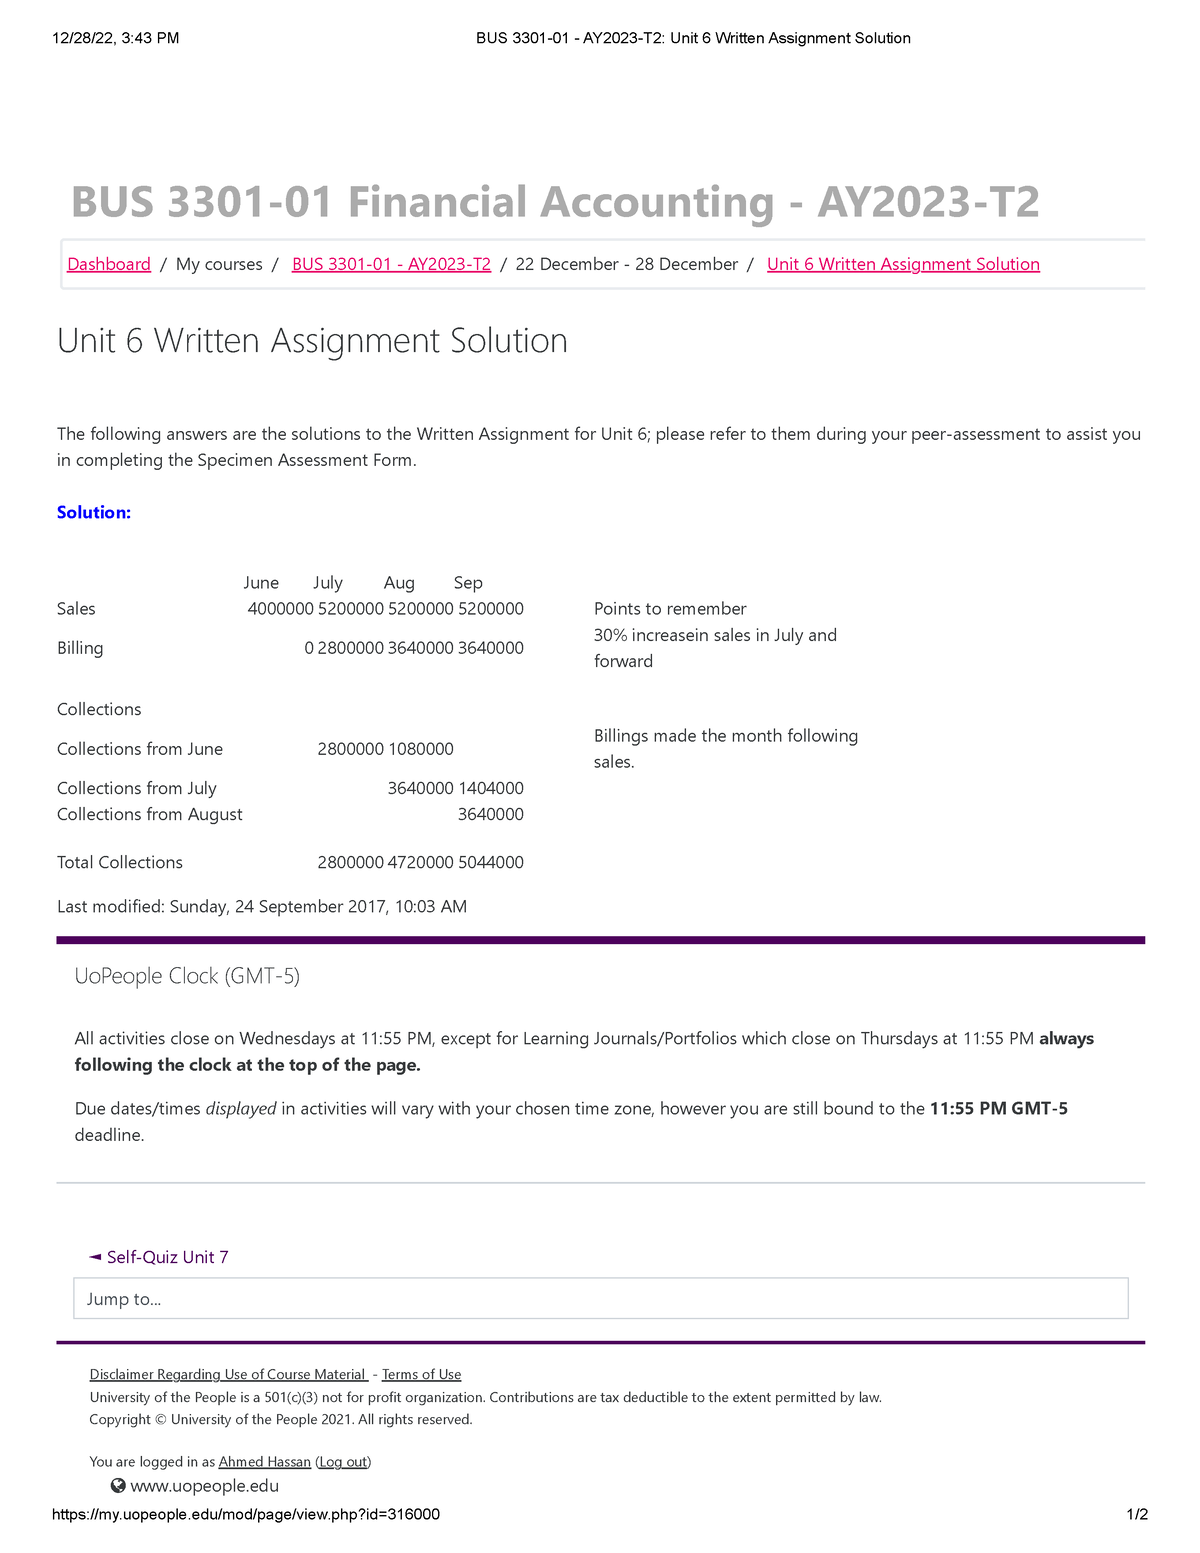 bus 3301 written assignment unit 2